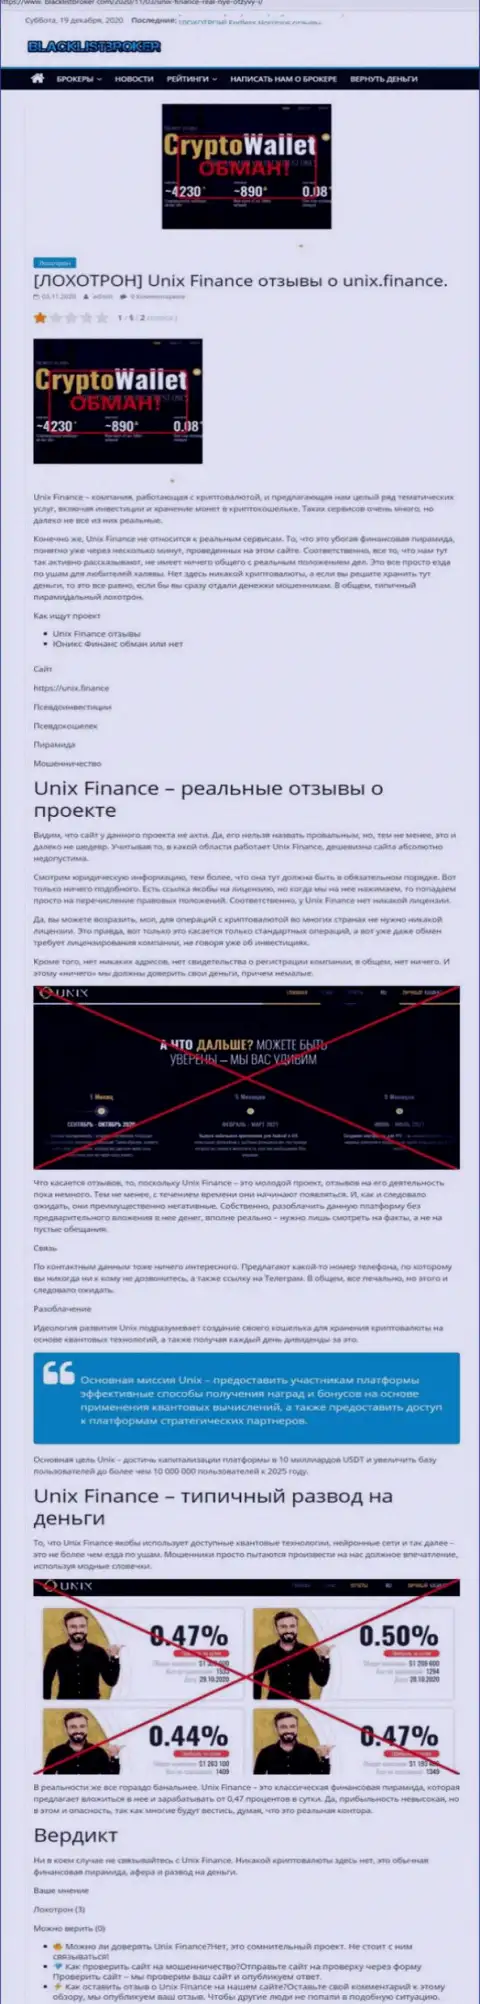 Unix Finance ОБУВАЮТ !!! Примеры противозаконных уловок